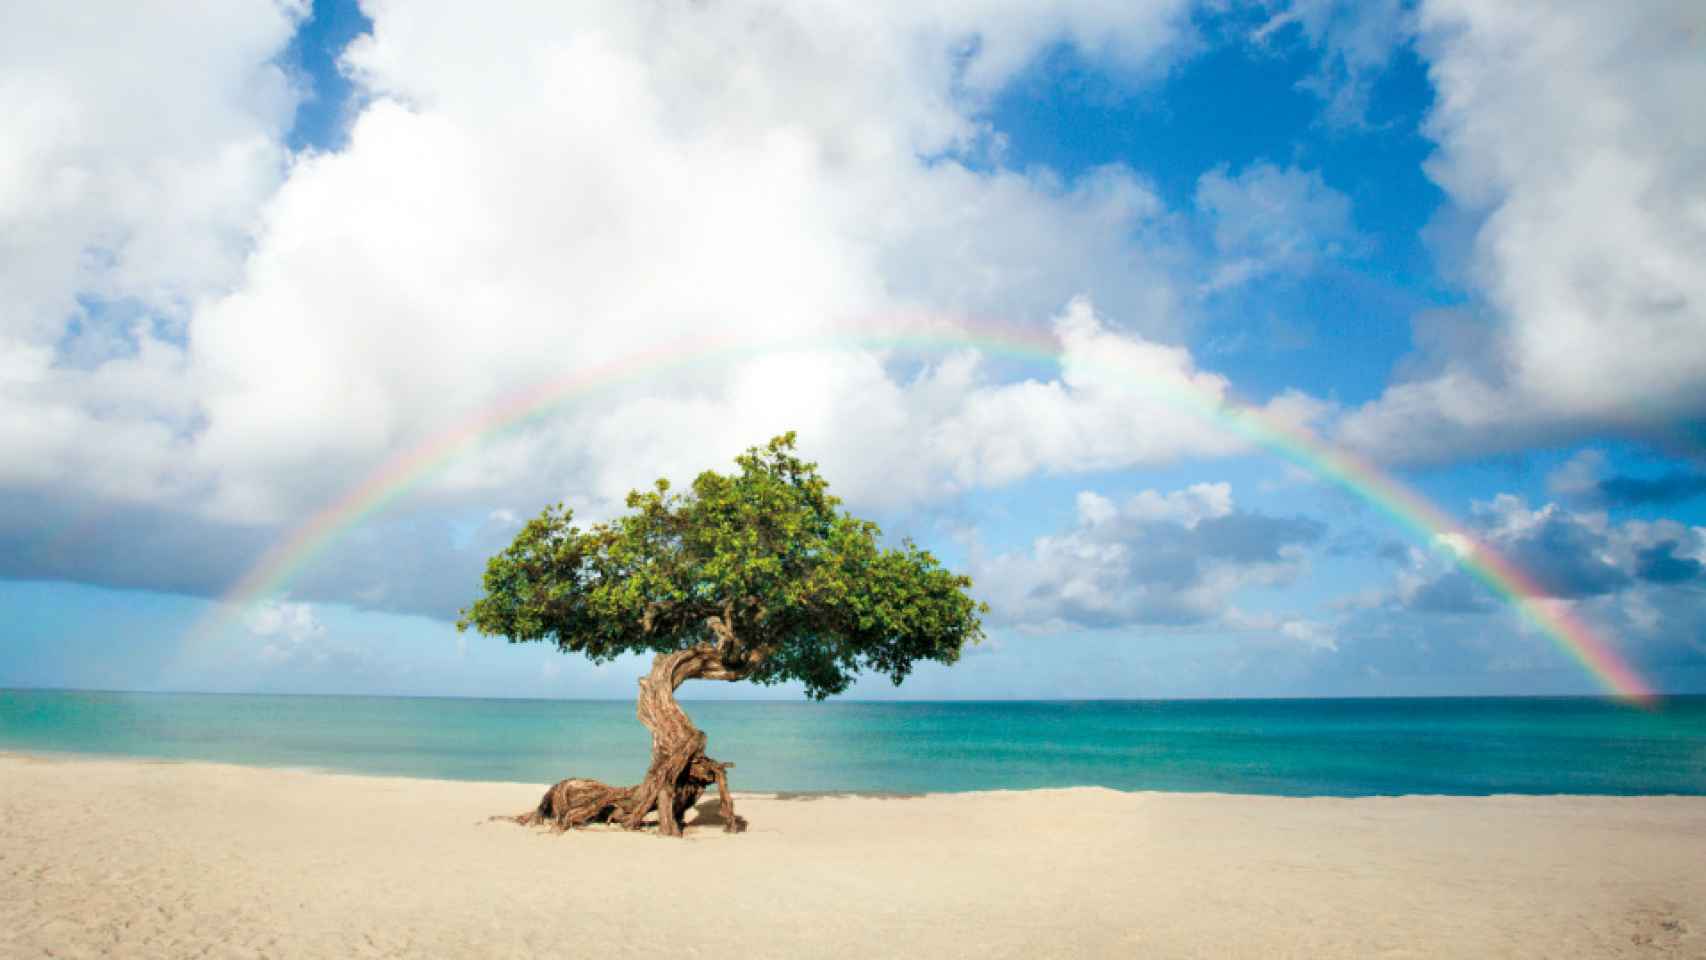 Aruba, extiende tu verano en las playas perfectas.